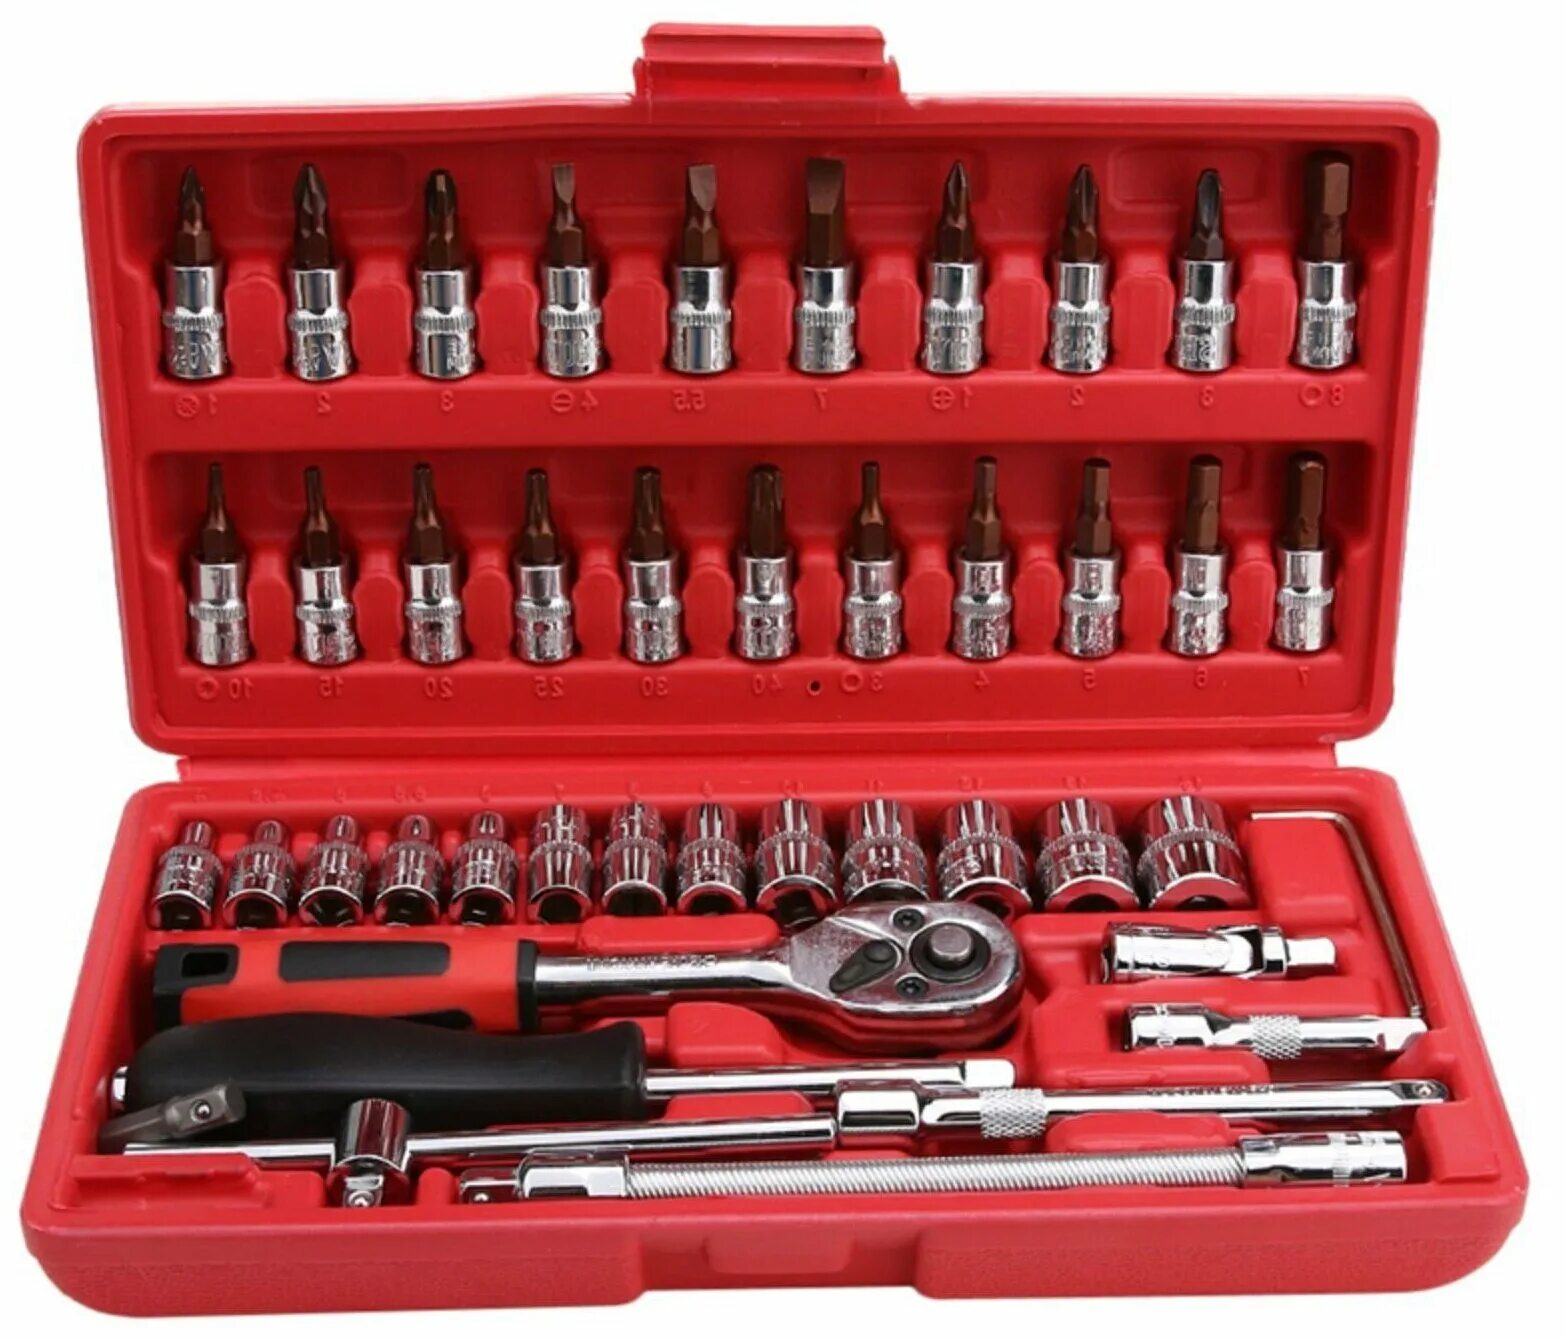 Набор профессионального инструмента 46 предметов Romitech TS-2146. Socket Wrench Set набор головок. 46 PCS Socket Set 1/4. Набор инструментов Тоол сет.